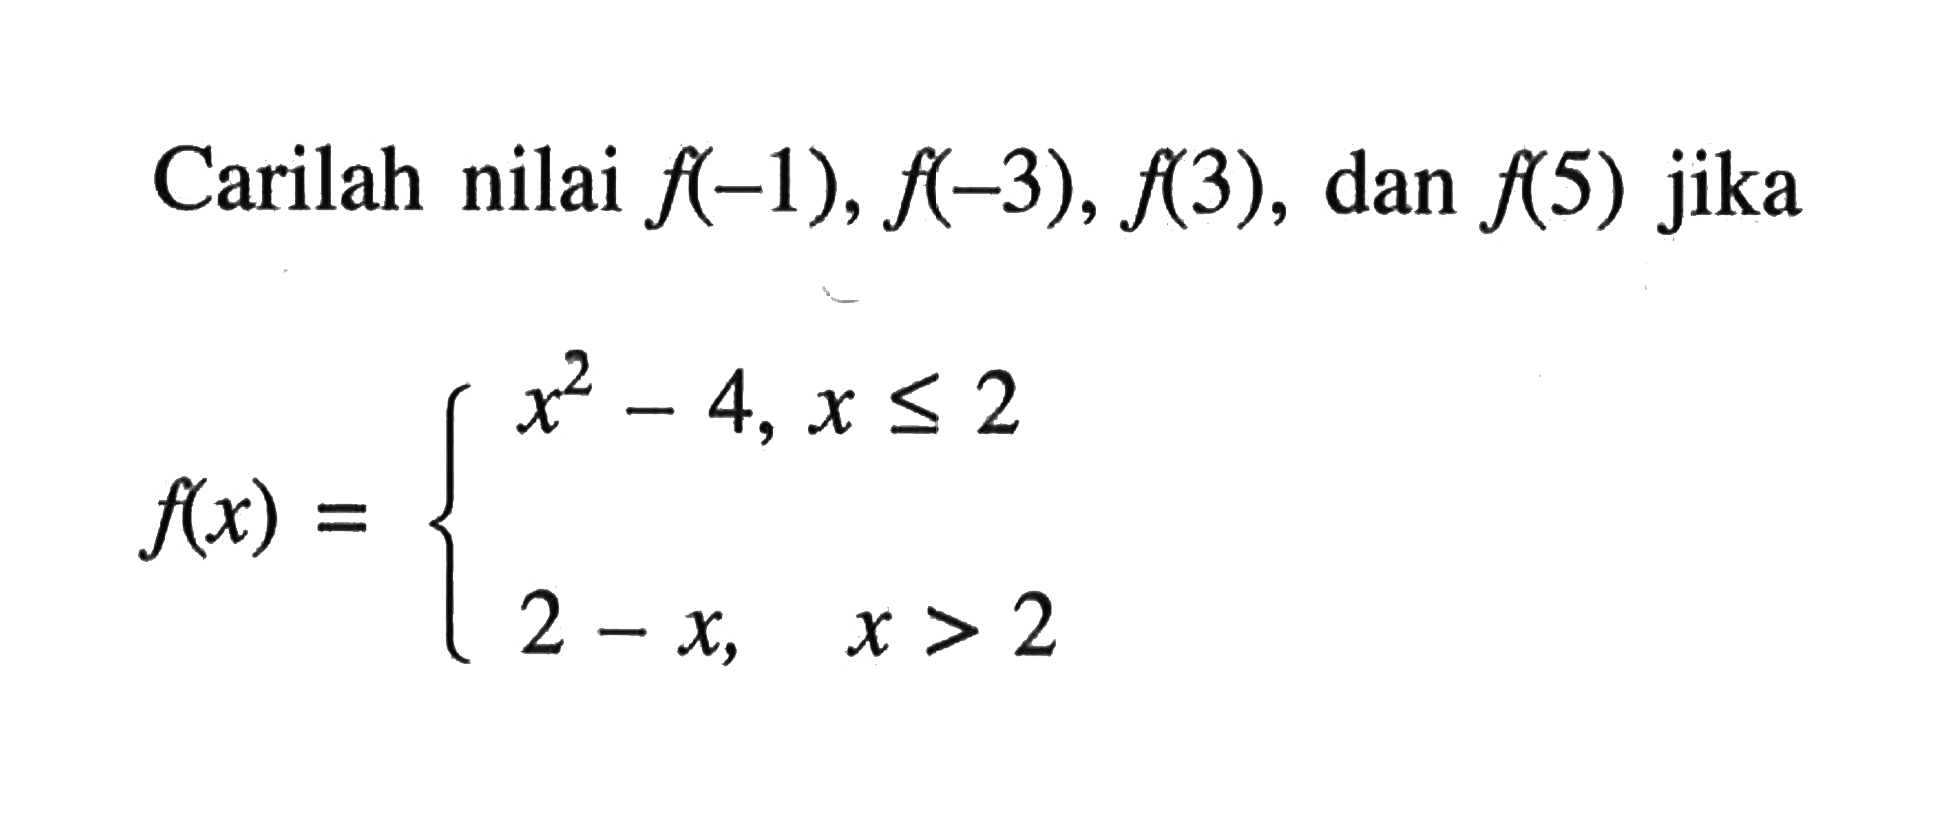 Carilah nilai f(-1), f(-3), f(3), dan f(5) jika f(x) = x^2 - 4, x <= 2 2 - x, x > 2